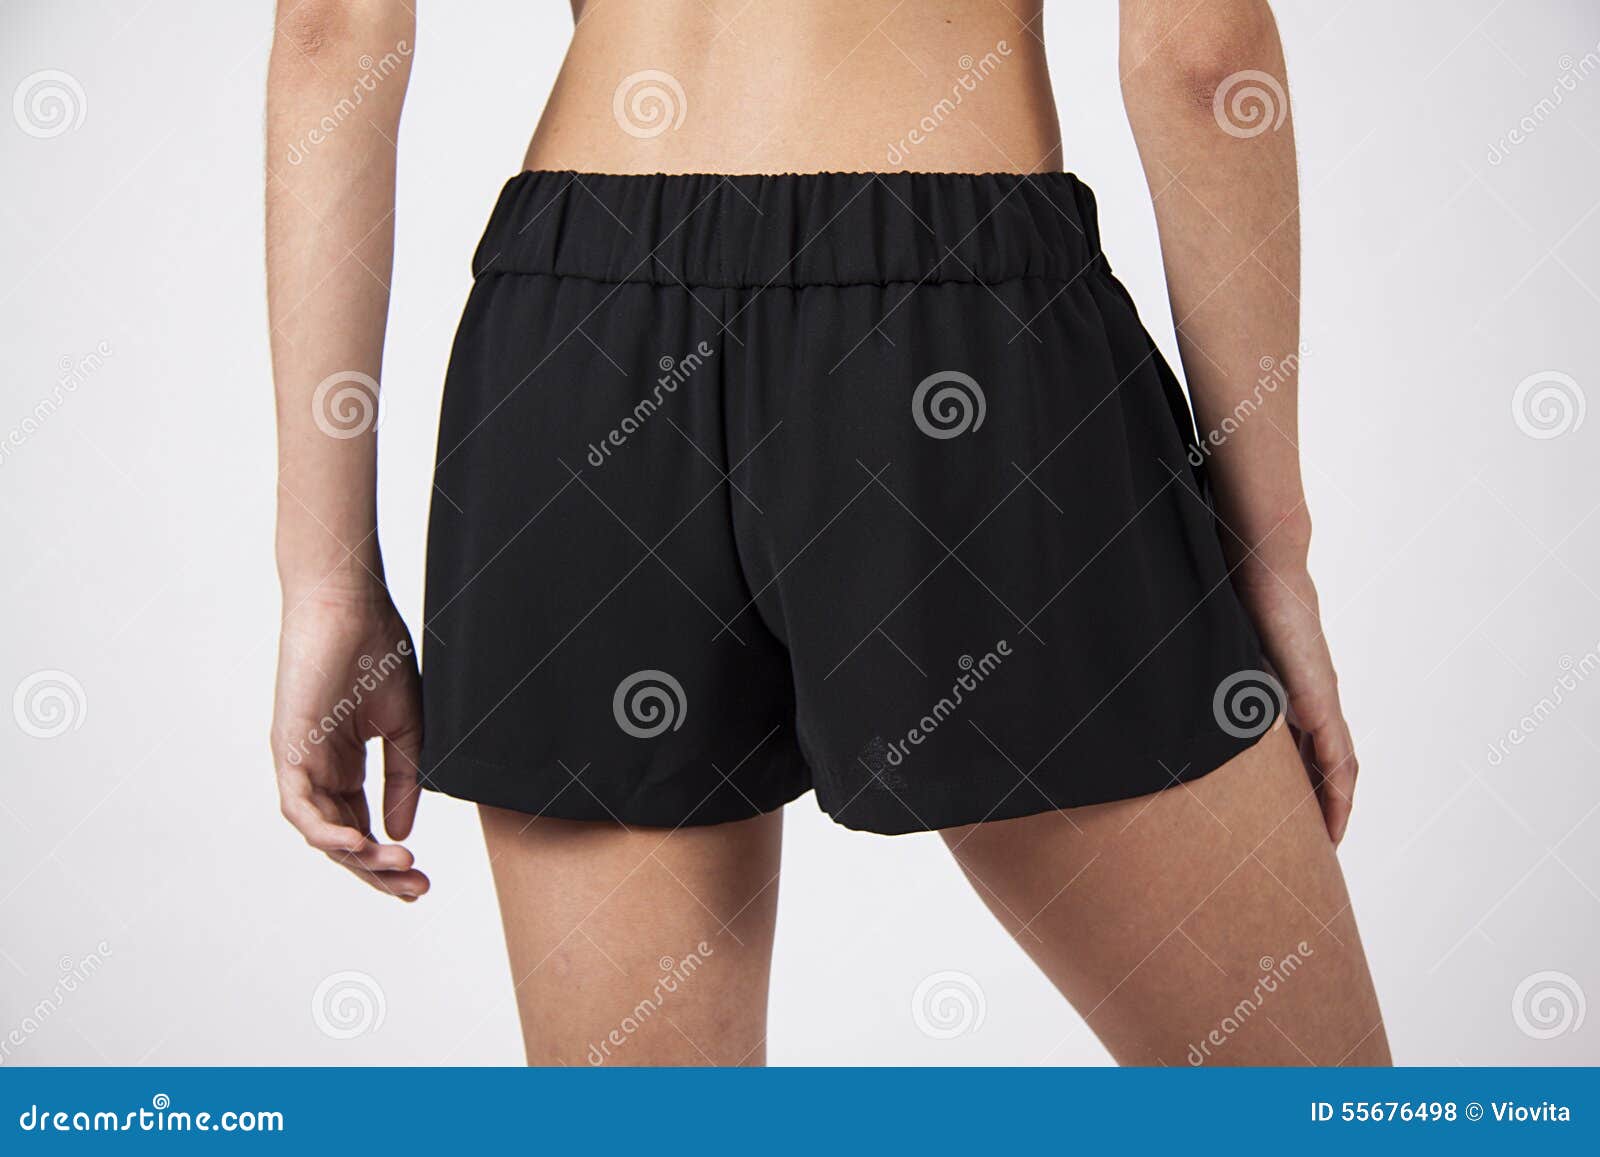 Pantalones cortos negros mujer